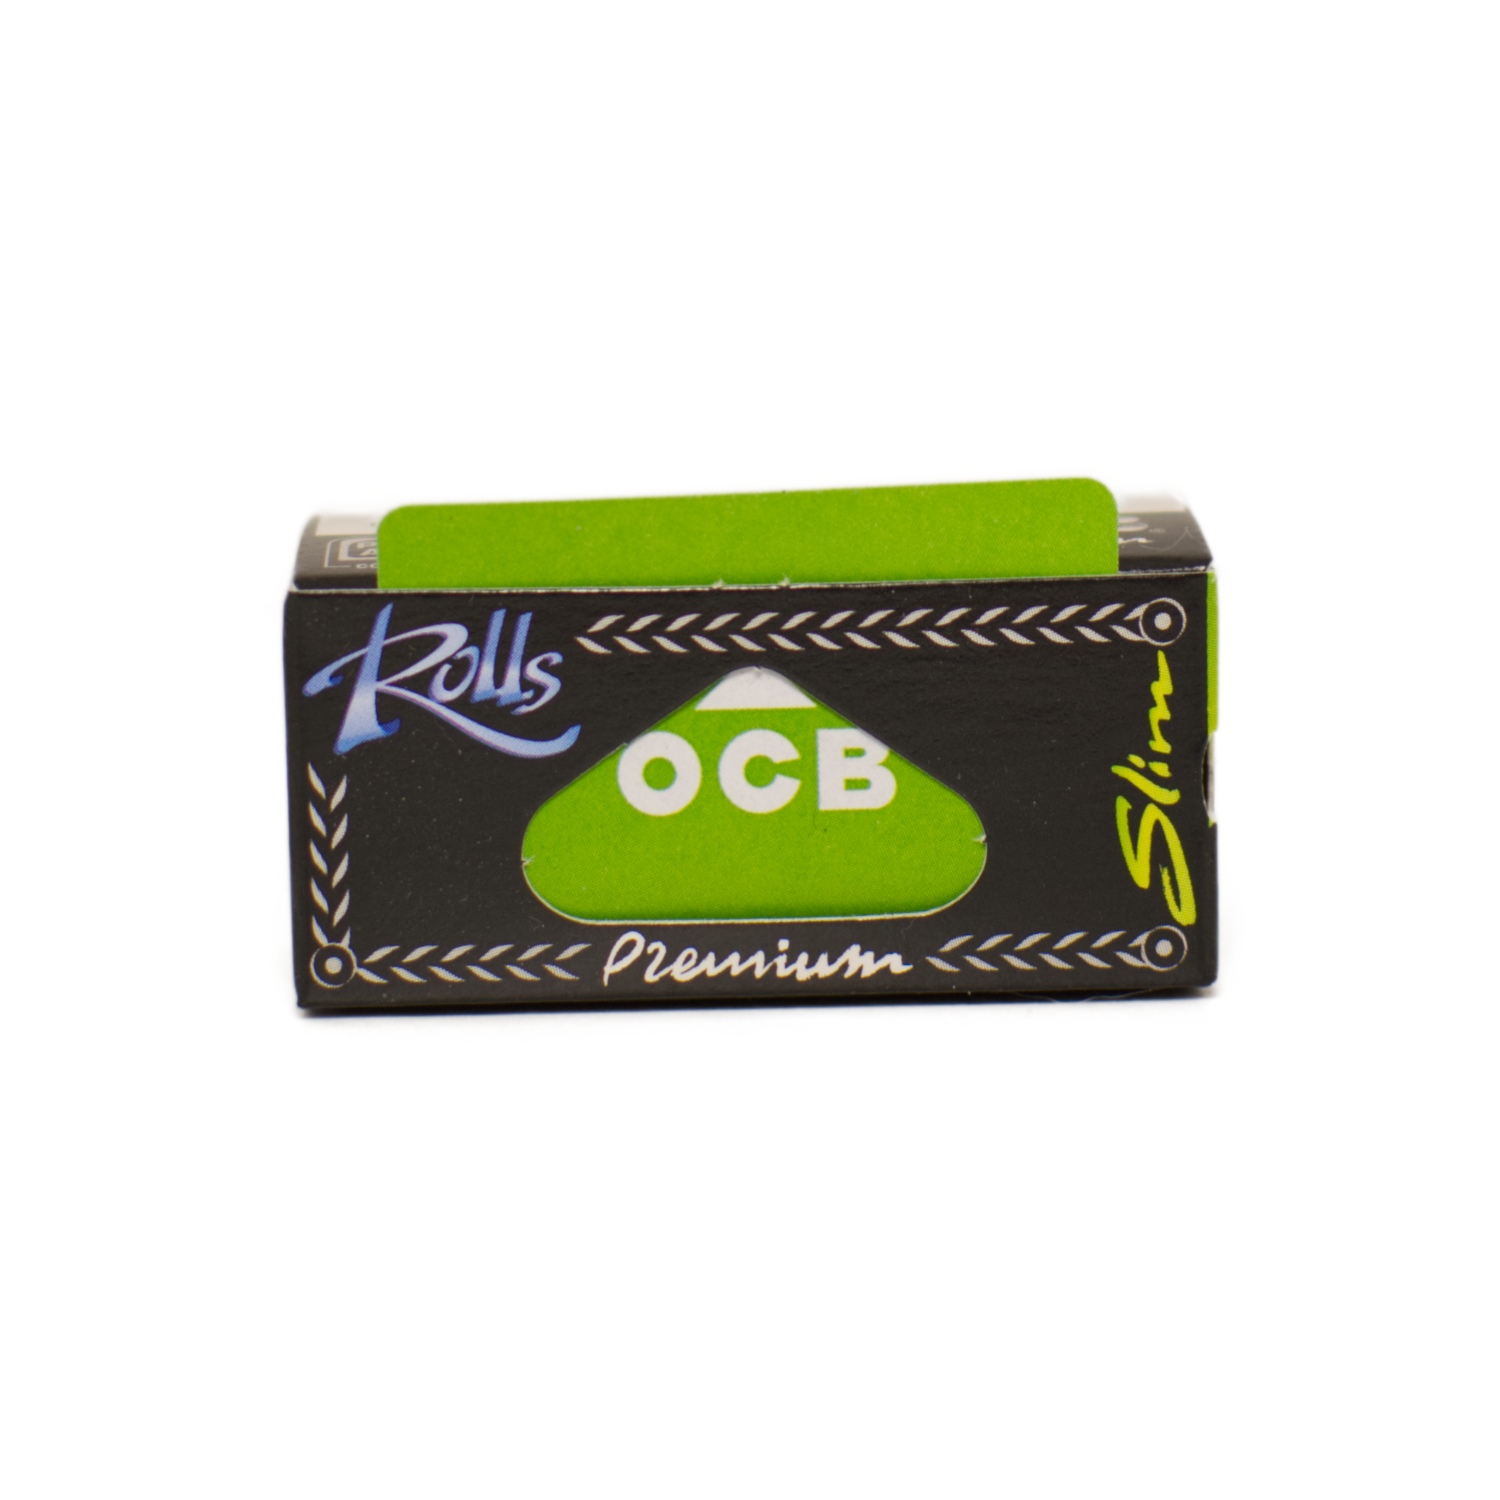 Rolls “OCB” Premium